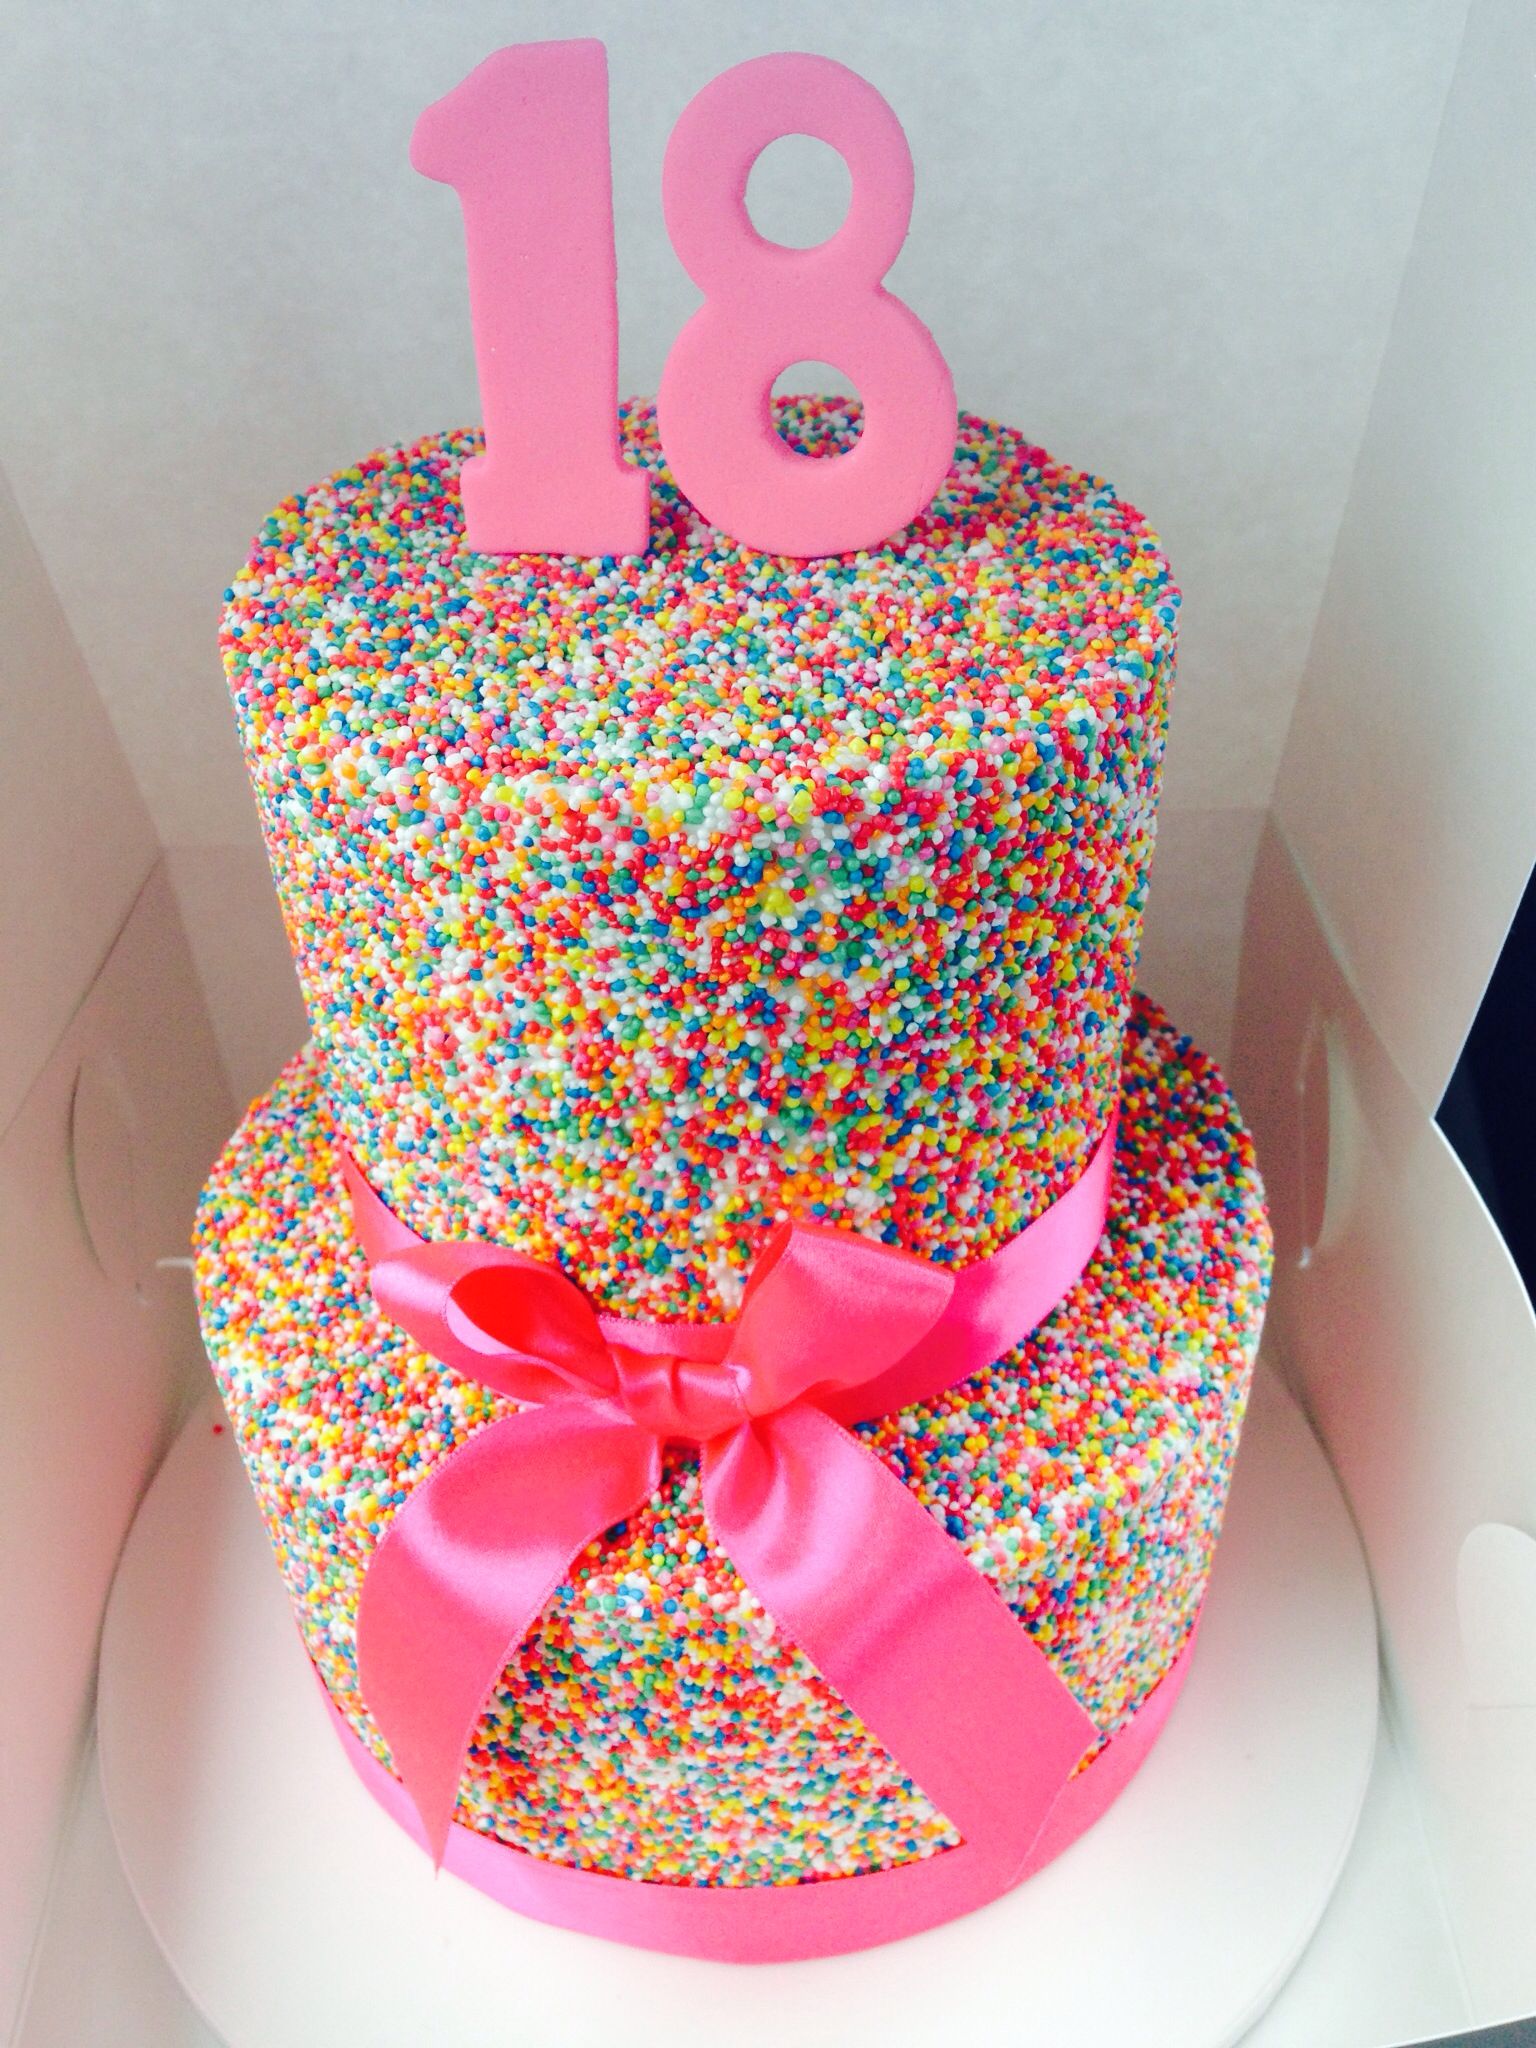 Торты на день рождения девочке 15 лет фото